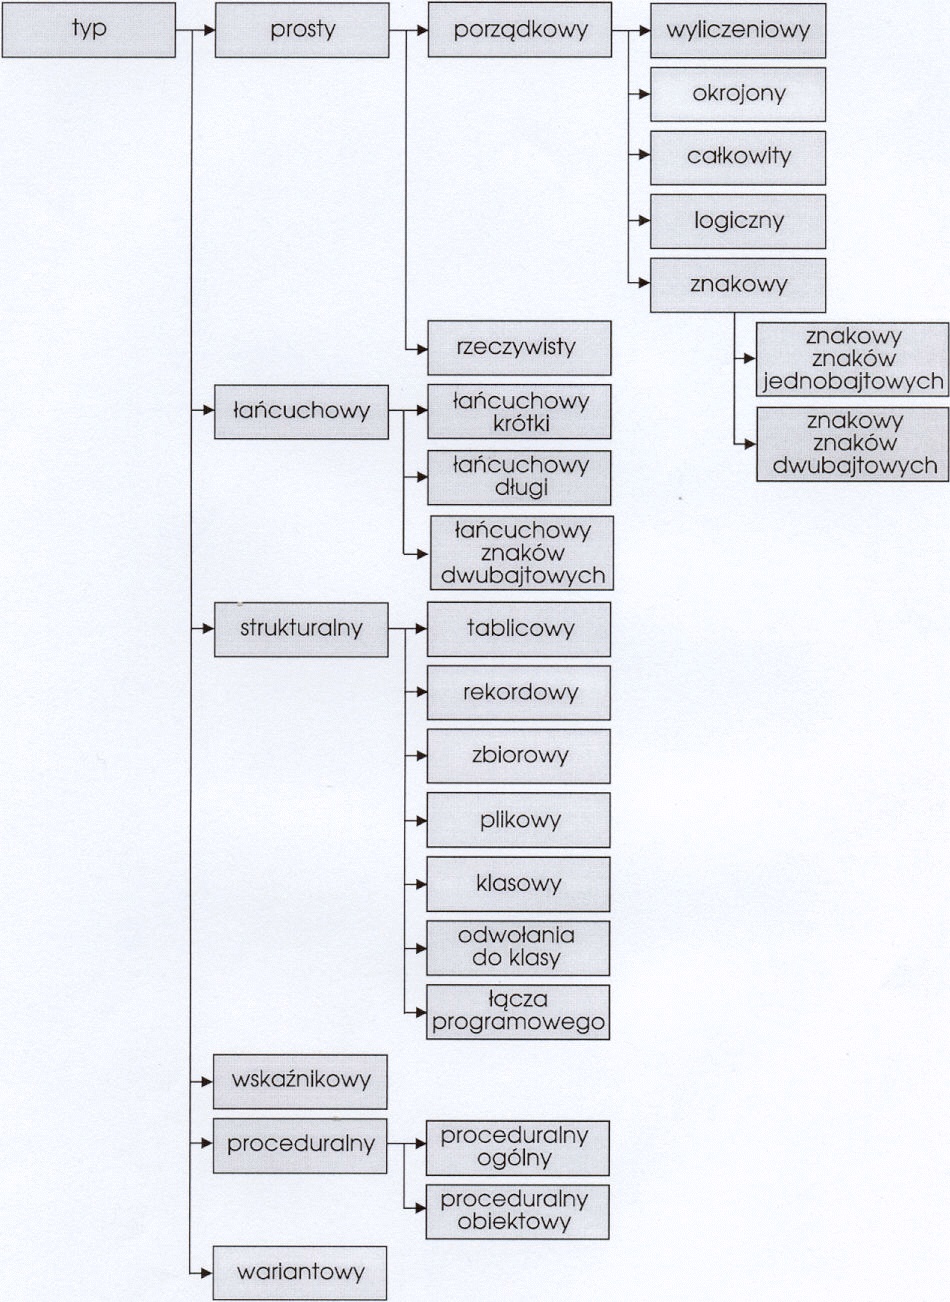 Przegląd konstrukcji języka Delphi opis